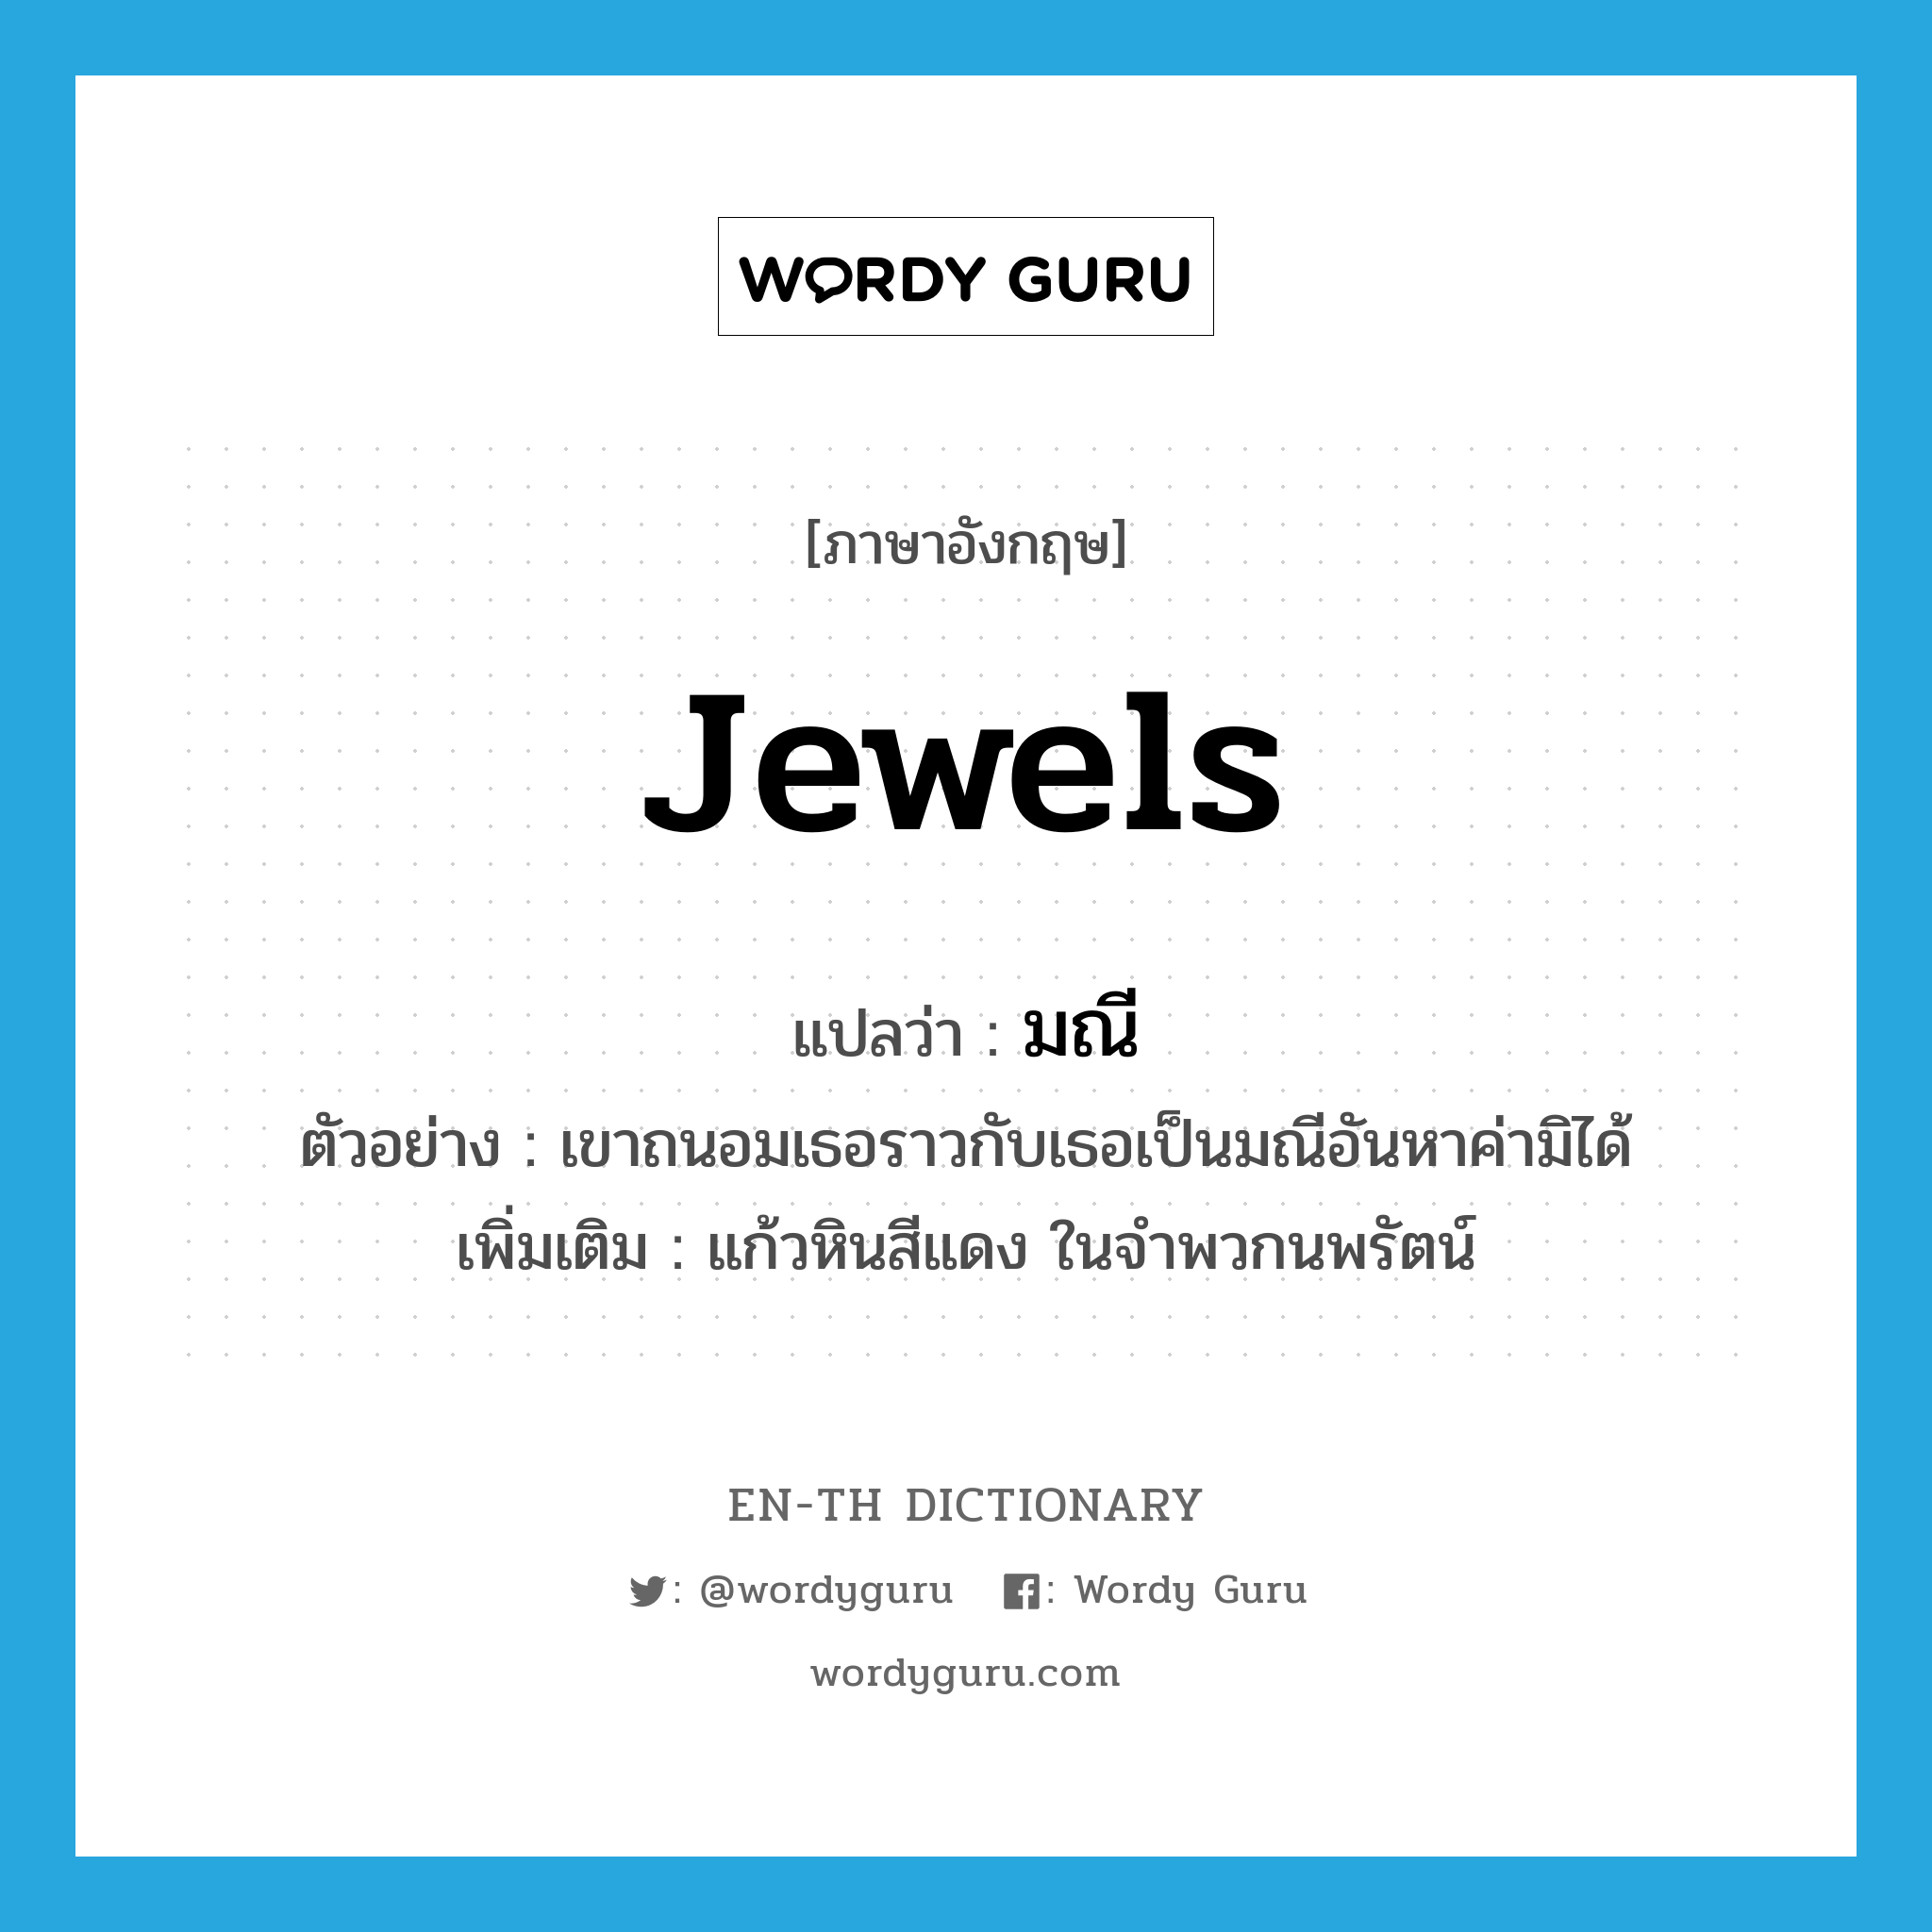 jewels แปลว่า?, คำศัพท์ภาษาอังกฤษ jewels แปลว่า มณี ประเภท N ตัวอย่าง เขาถนอมเธอราวกับเธอเป็นมณีอันหาค่ามิได้ เพิ่มเติม แก้วหินสีแดง ในจำพวกนพรัตน์ หมวด N